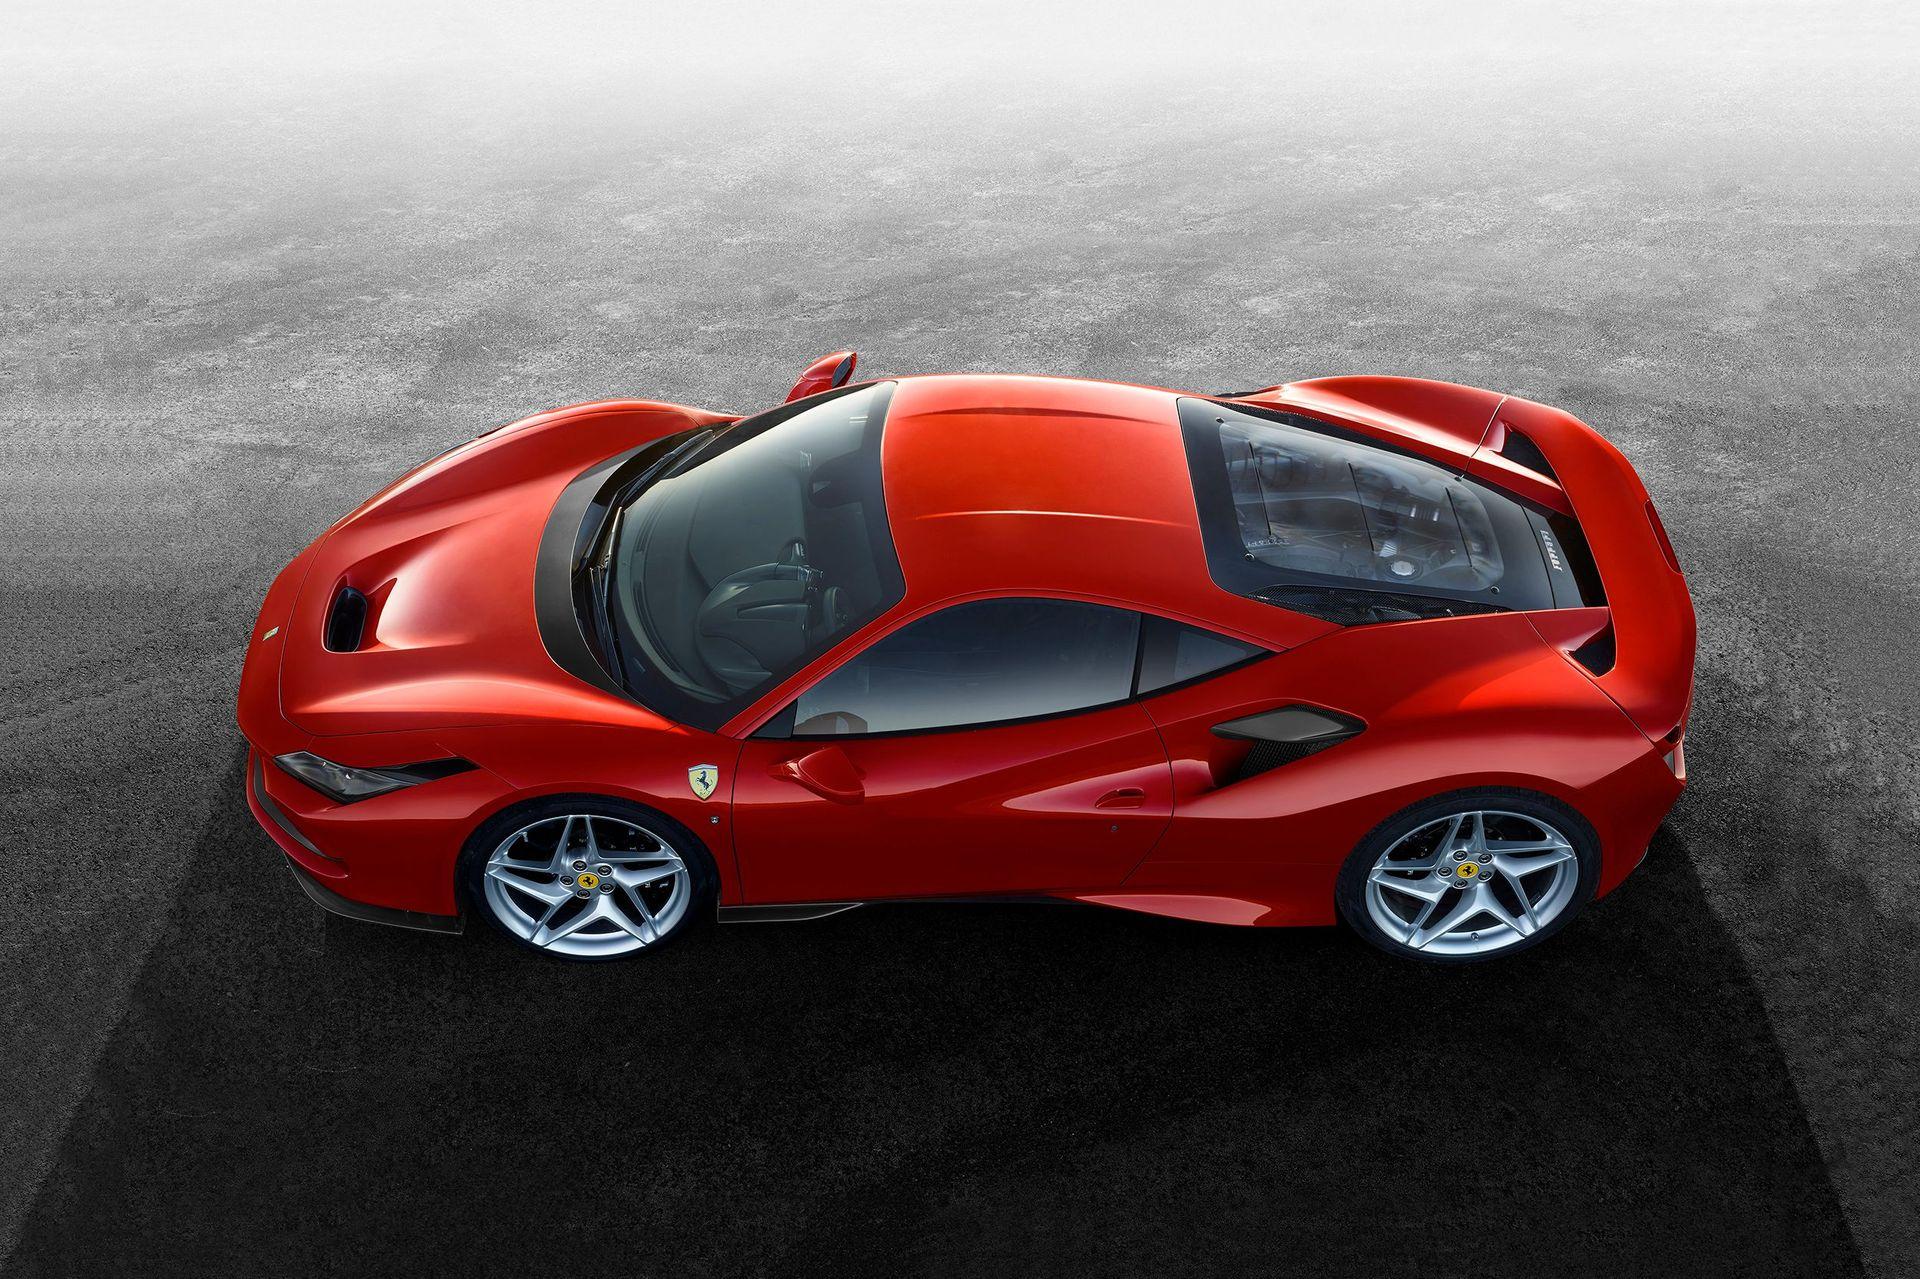 Ferrari_F8_Tributo_quote.jpg